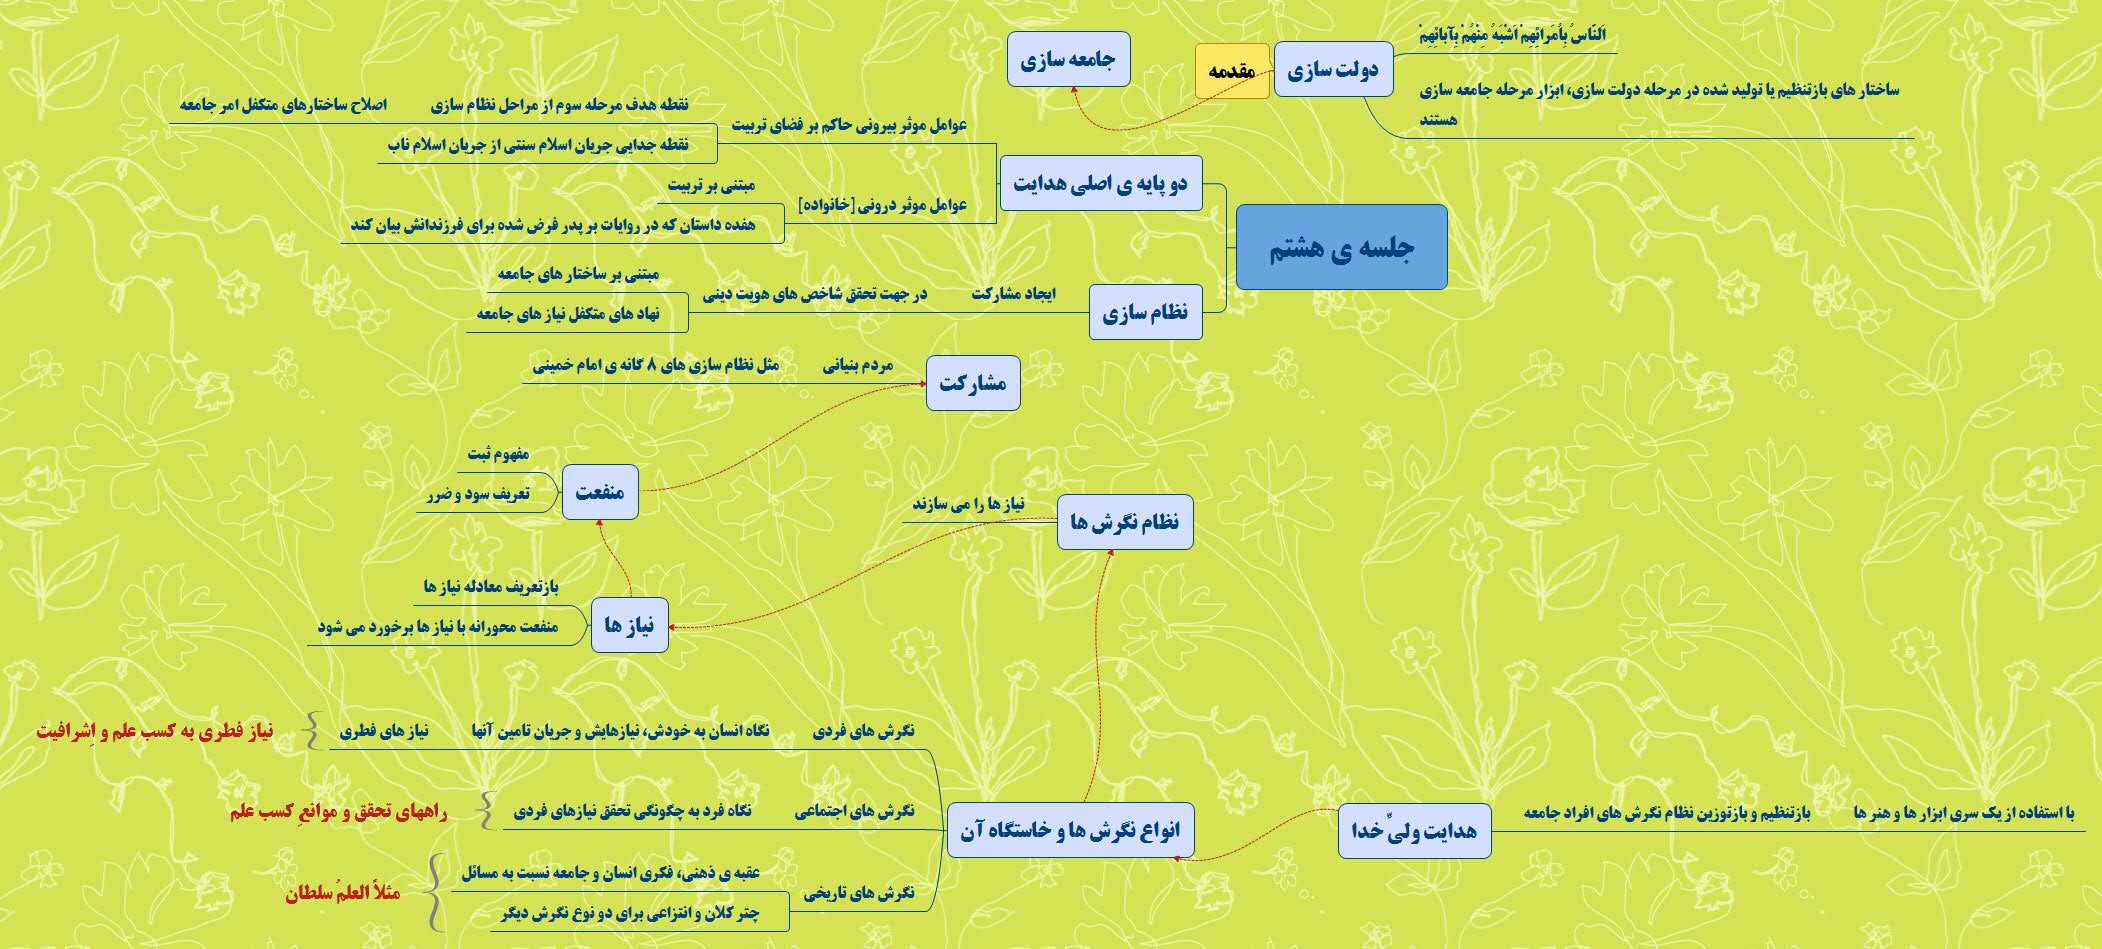 نقشه ذهنی جلسه هفتم دوره جهت حرکت انقلاب اسلامی